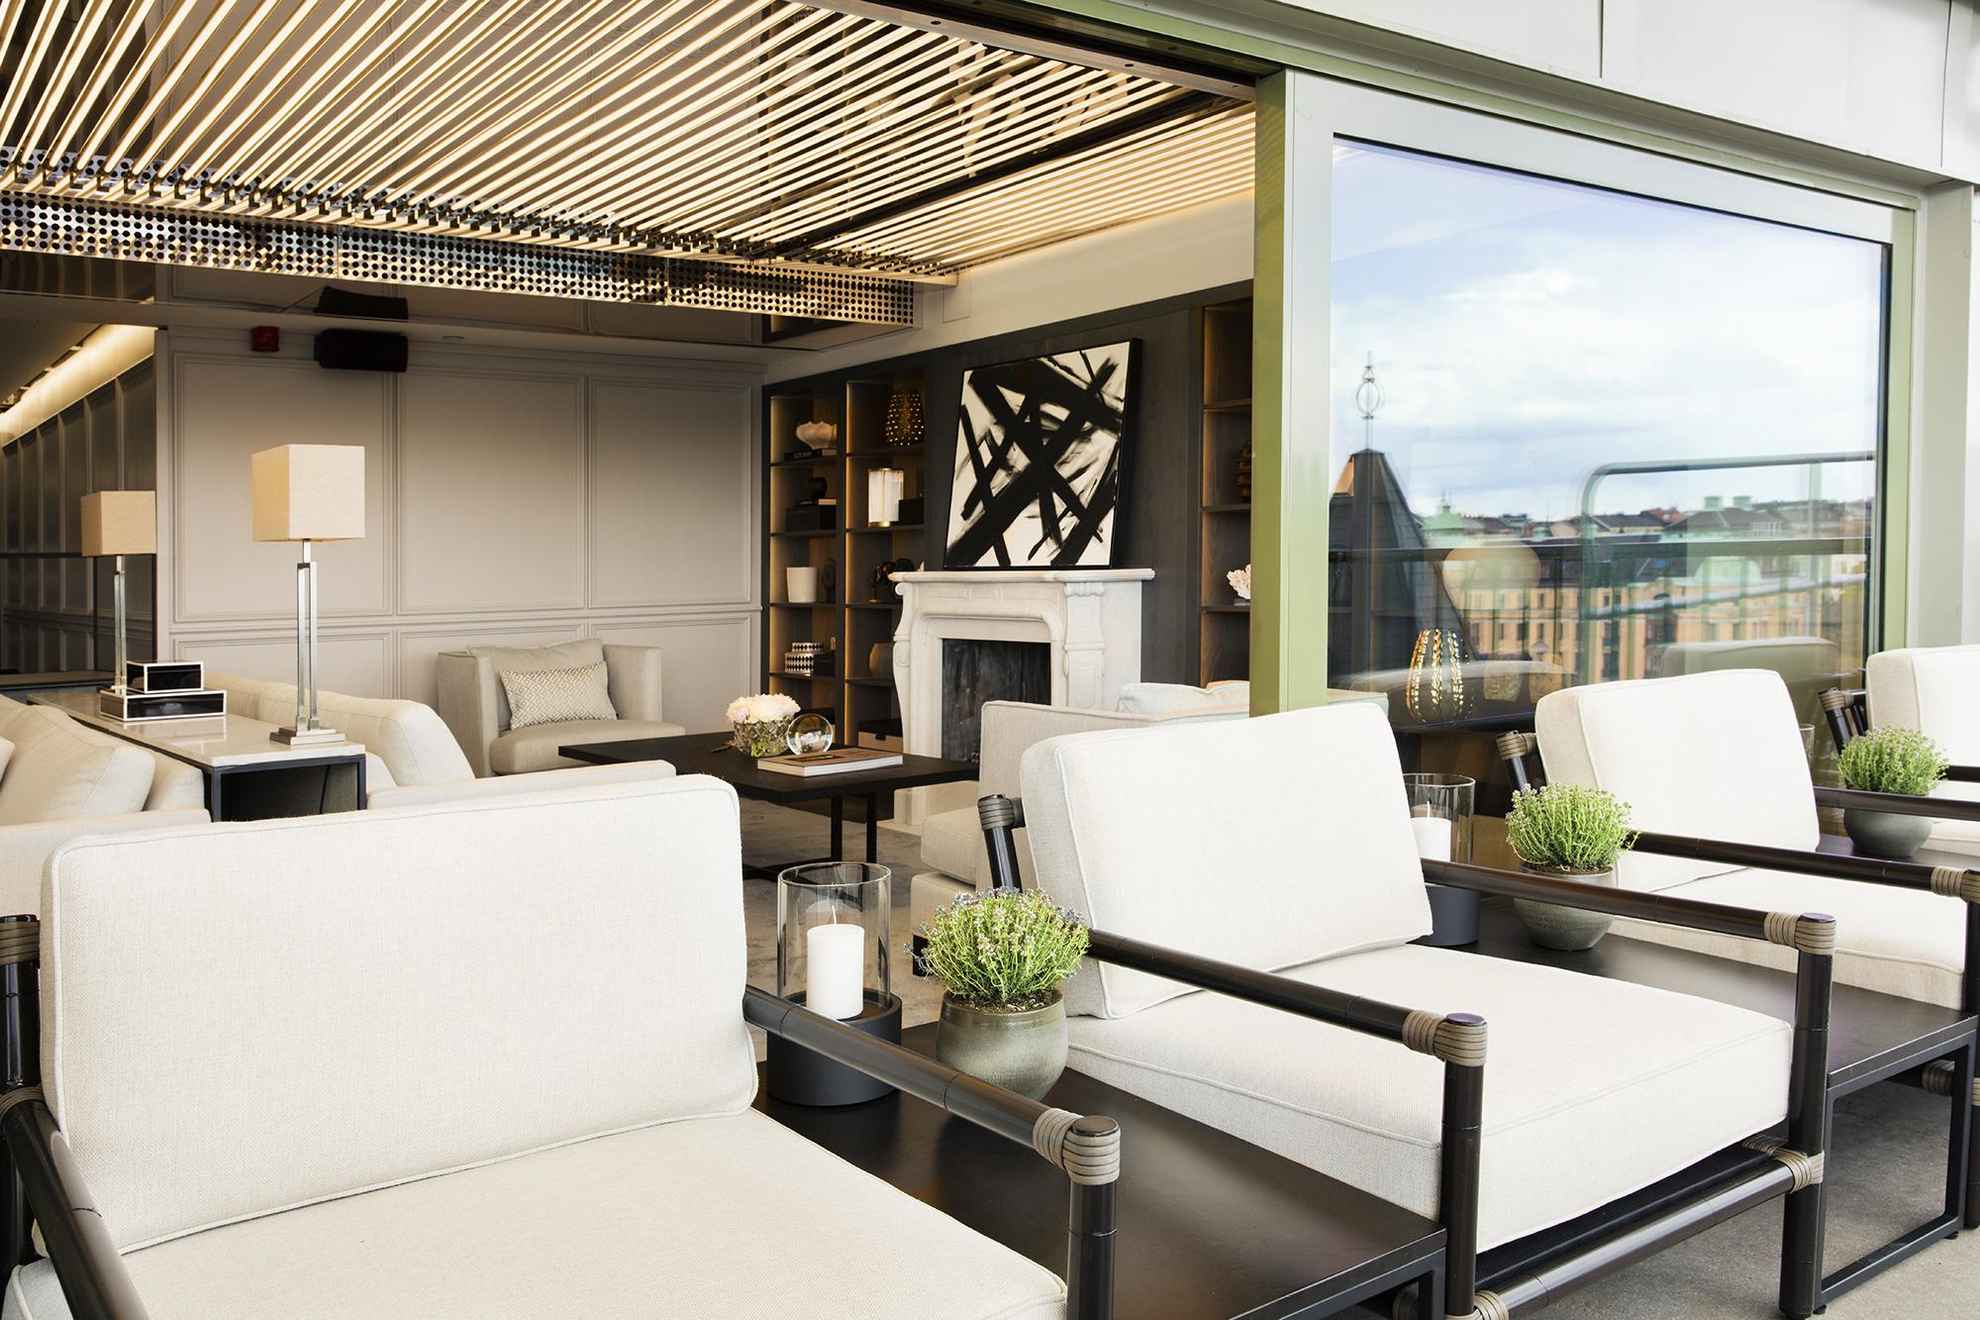 La terrasse du bar Le Hibou avec des meubles d'extérieur recouverts de coussins blancs.